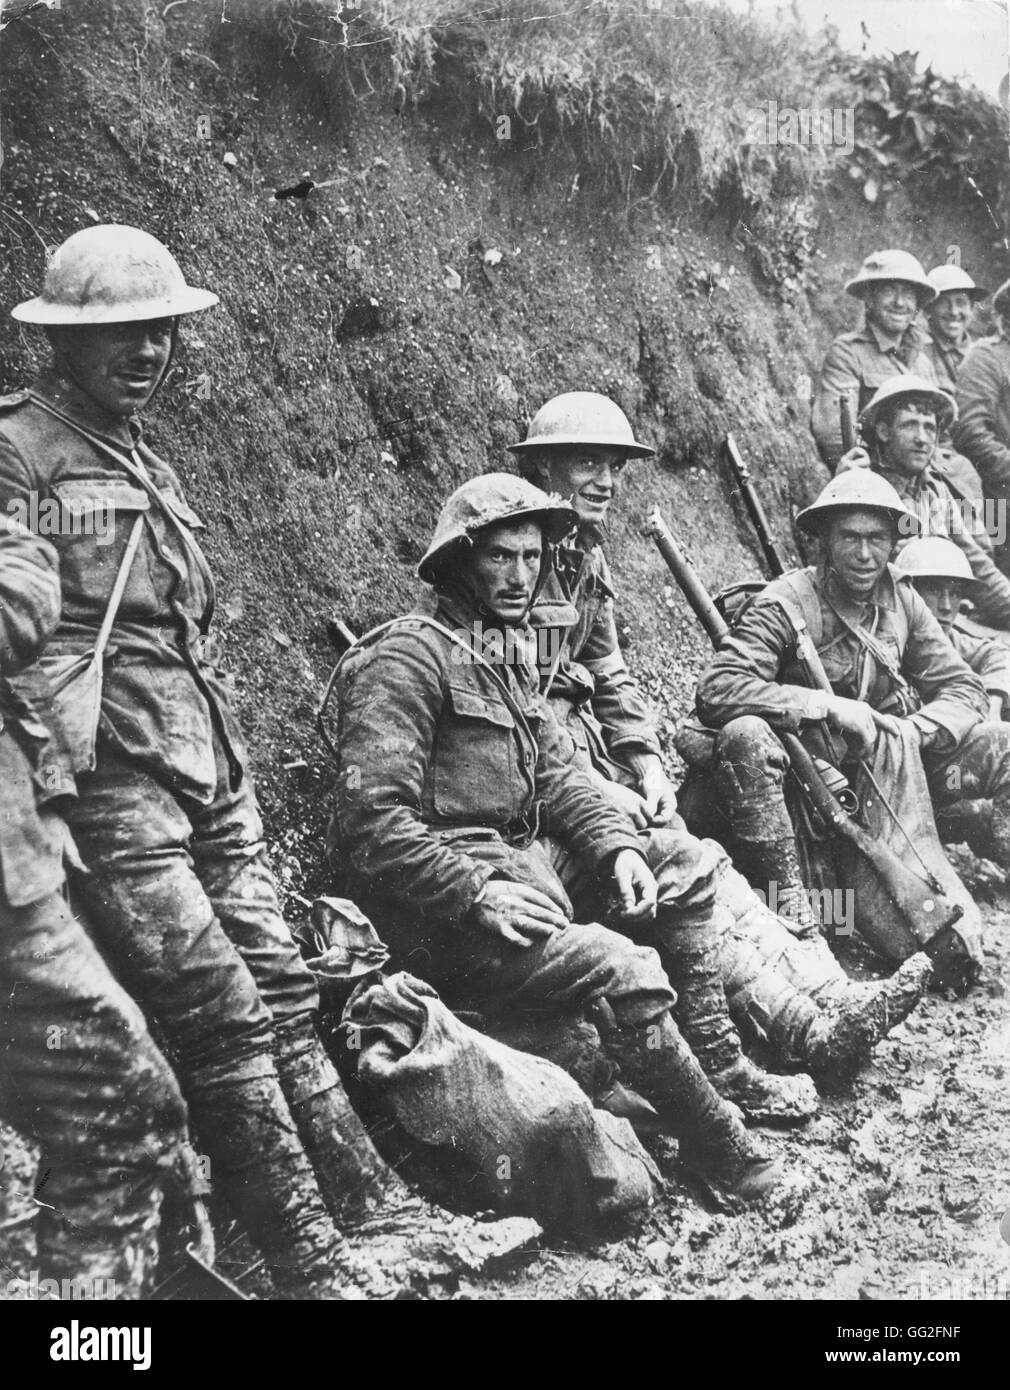 Première Guerre mondiale, 1916. Des soldats français dans les tranchées de la Somme. Banque D'Images